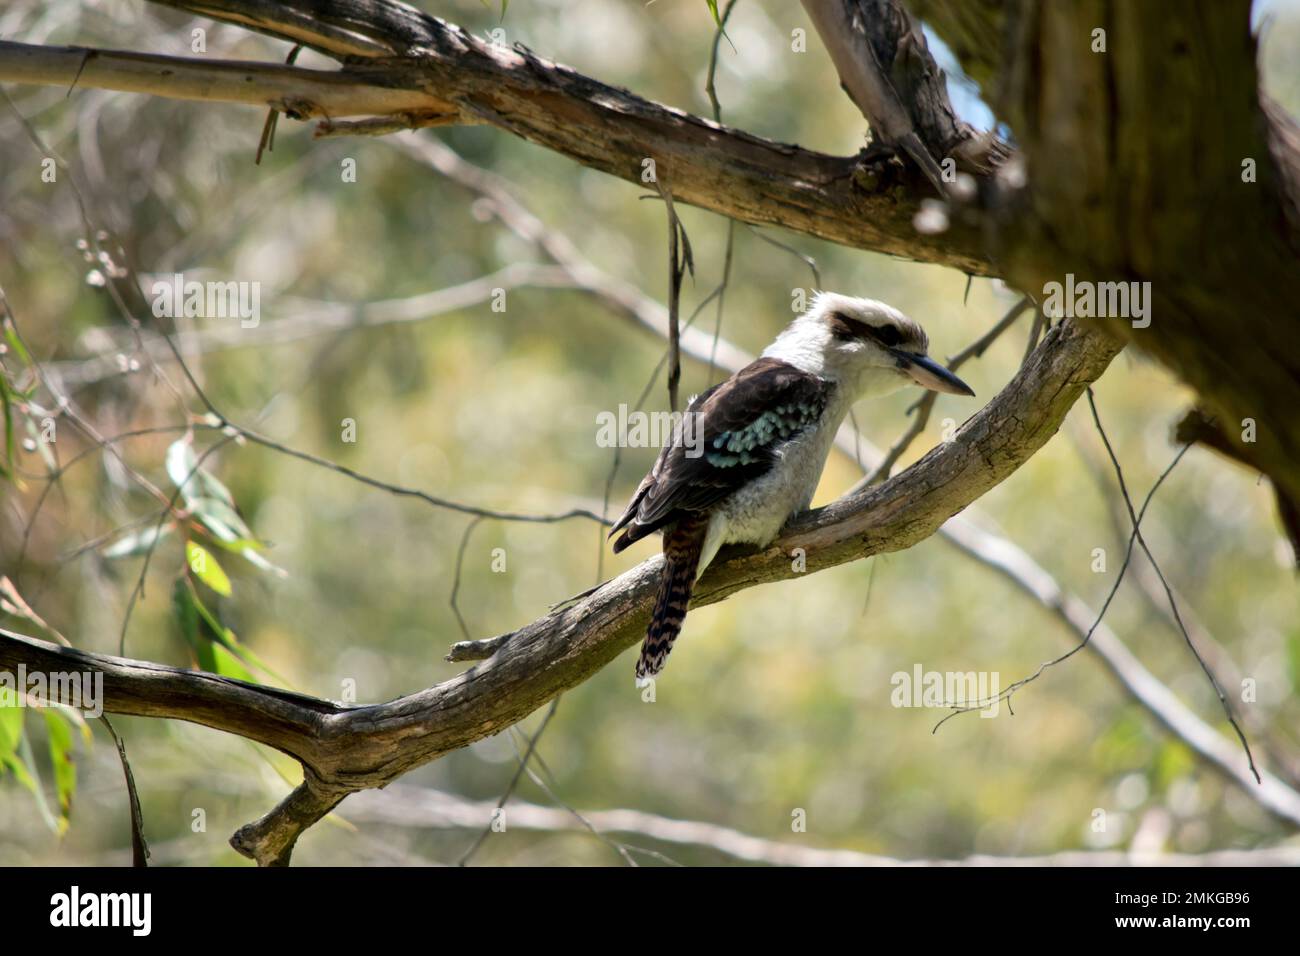 le kookaburra riant est perché haut dans un arbre Banque D'Images